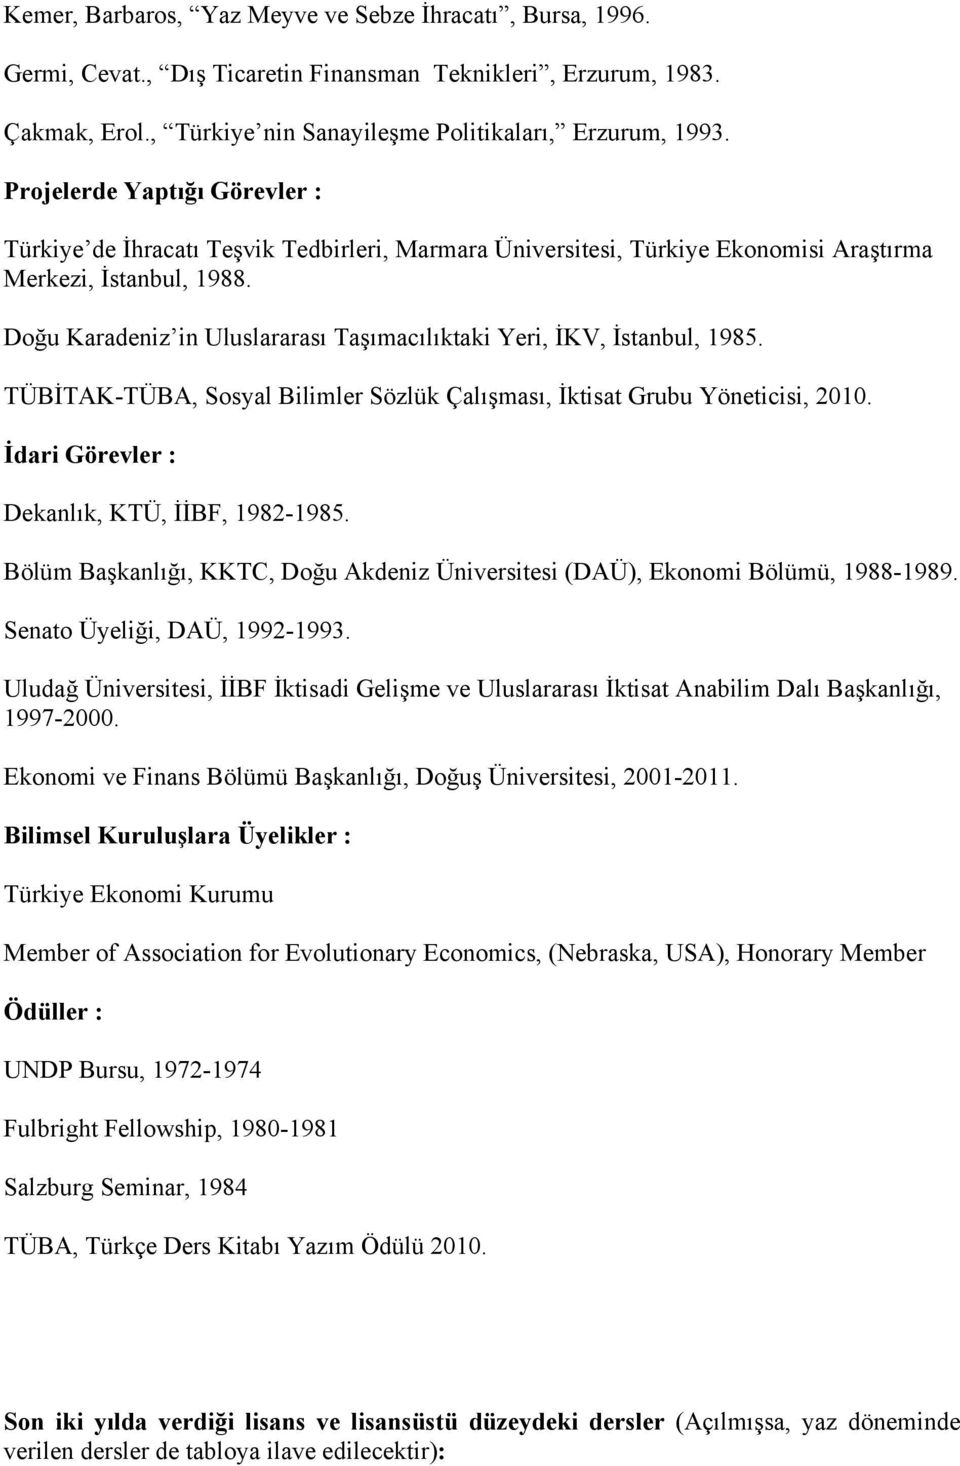 Doğu Karadeniz in Uluslararası Taşımacılıktaki Yeri, İKV, İstanbul, 1985. TÜBİTAK-TÜBA, Sosyal Bilimler Sözlük Çalışması, İktisat Grubu Yöneticisi, 2010.